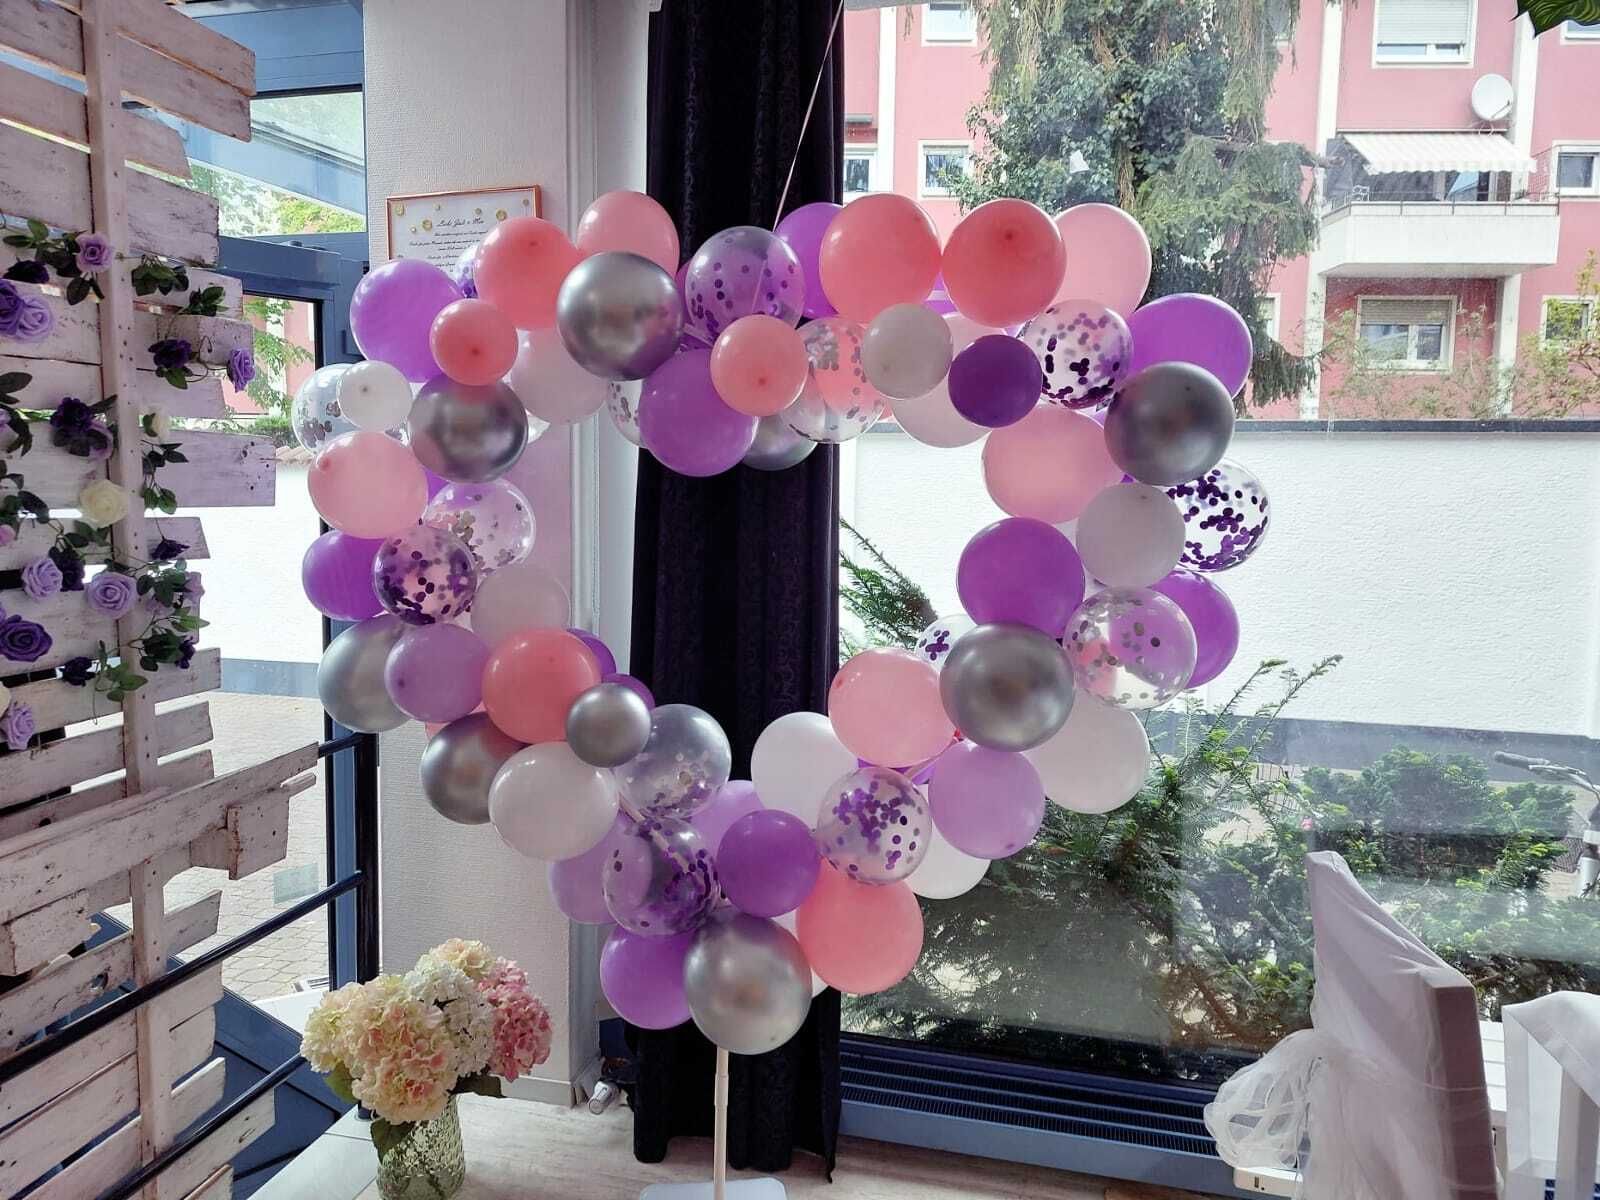 Das Bild zeigt einen großen herzförmigen Rahmen an dem viele Ballons in verschiedenen Farben befestigt sind